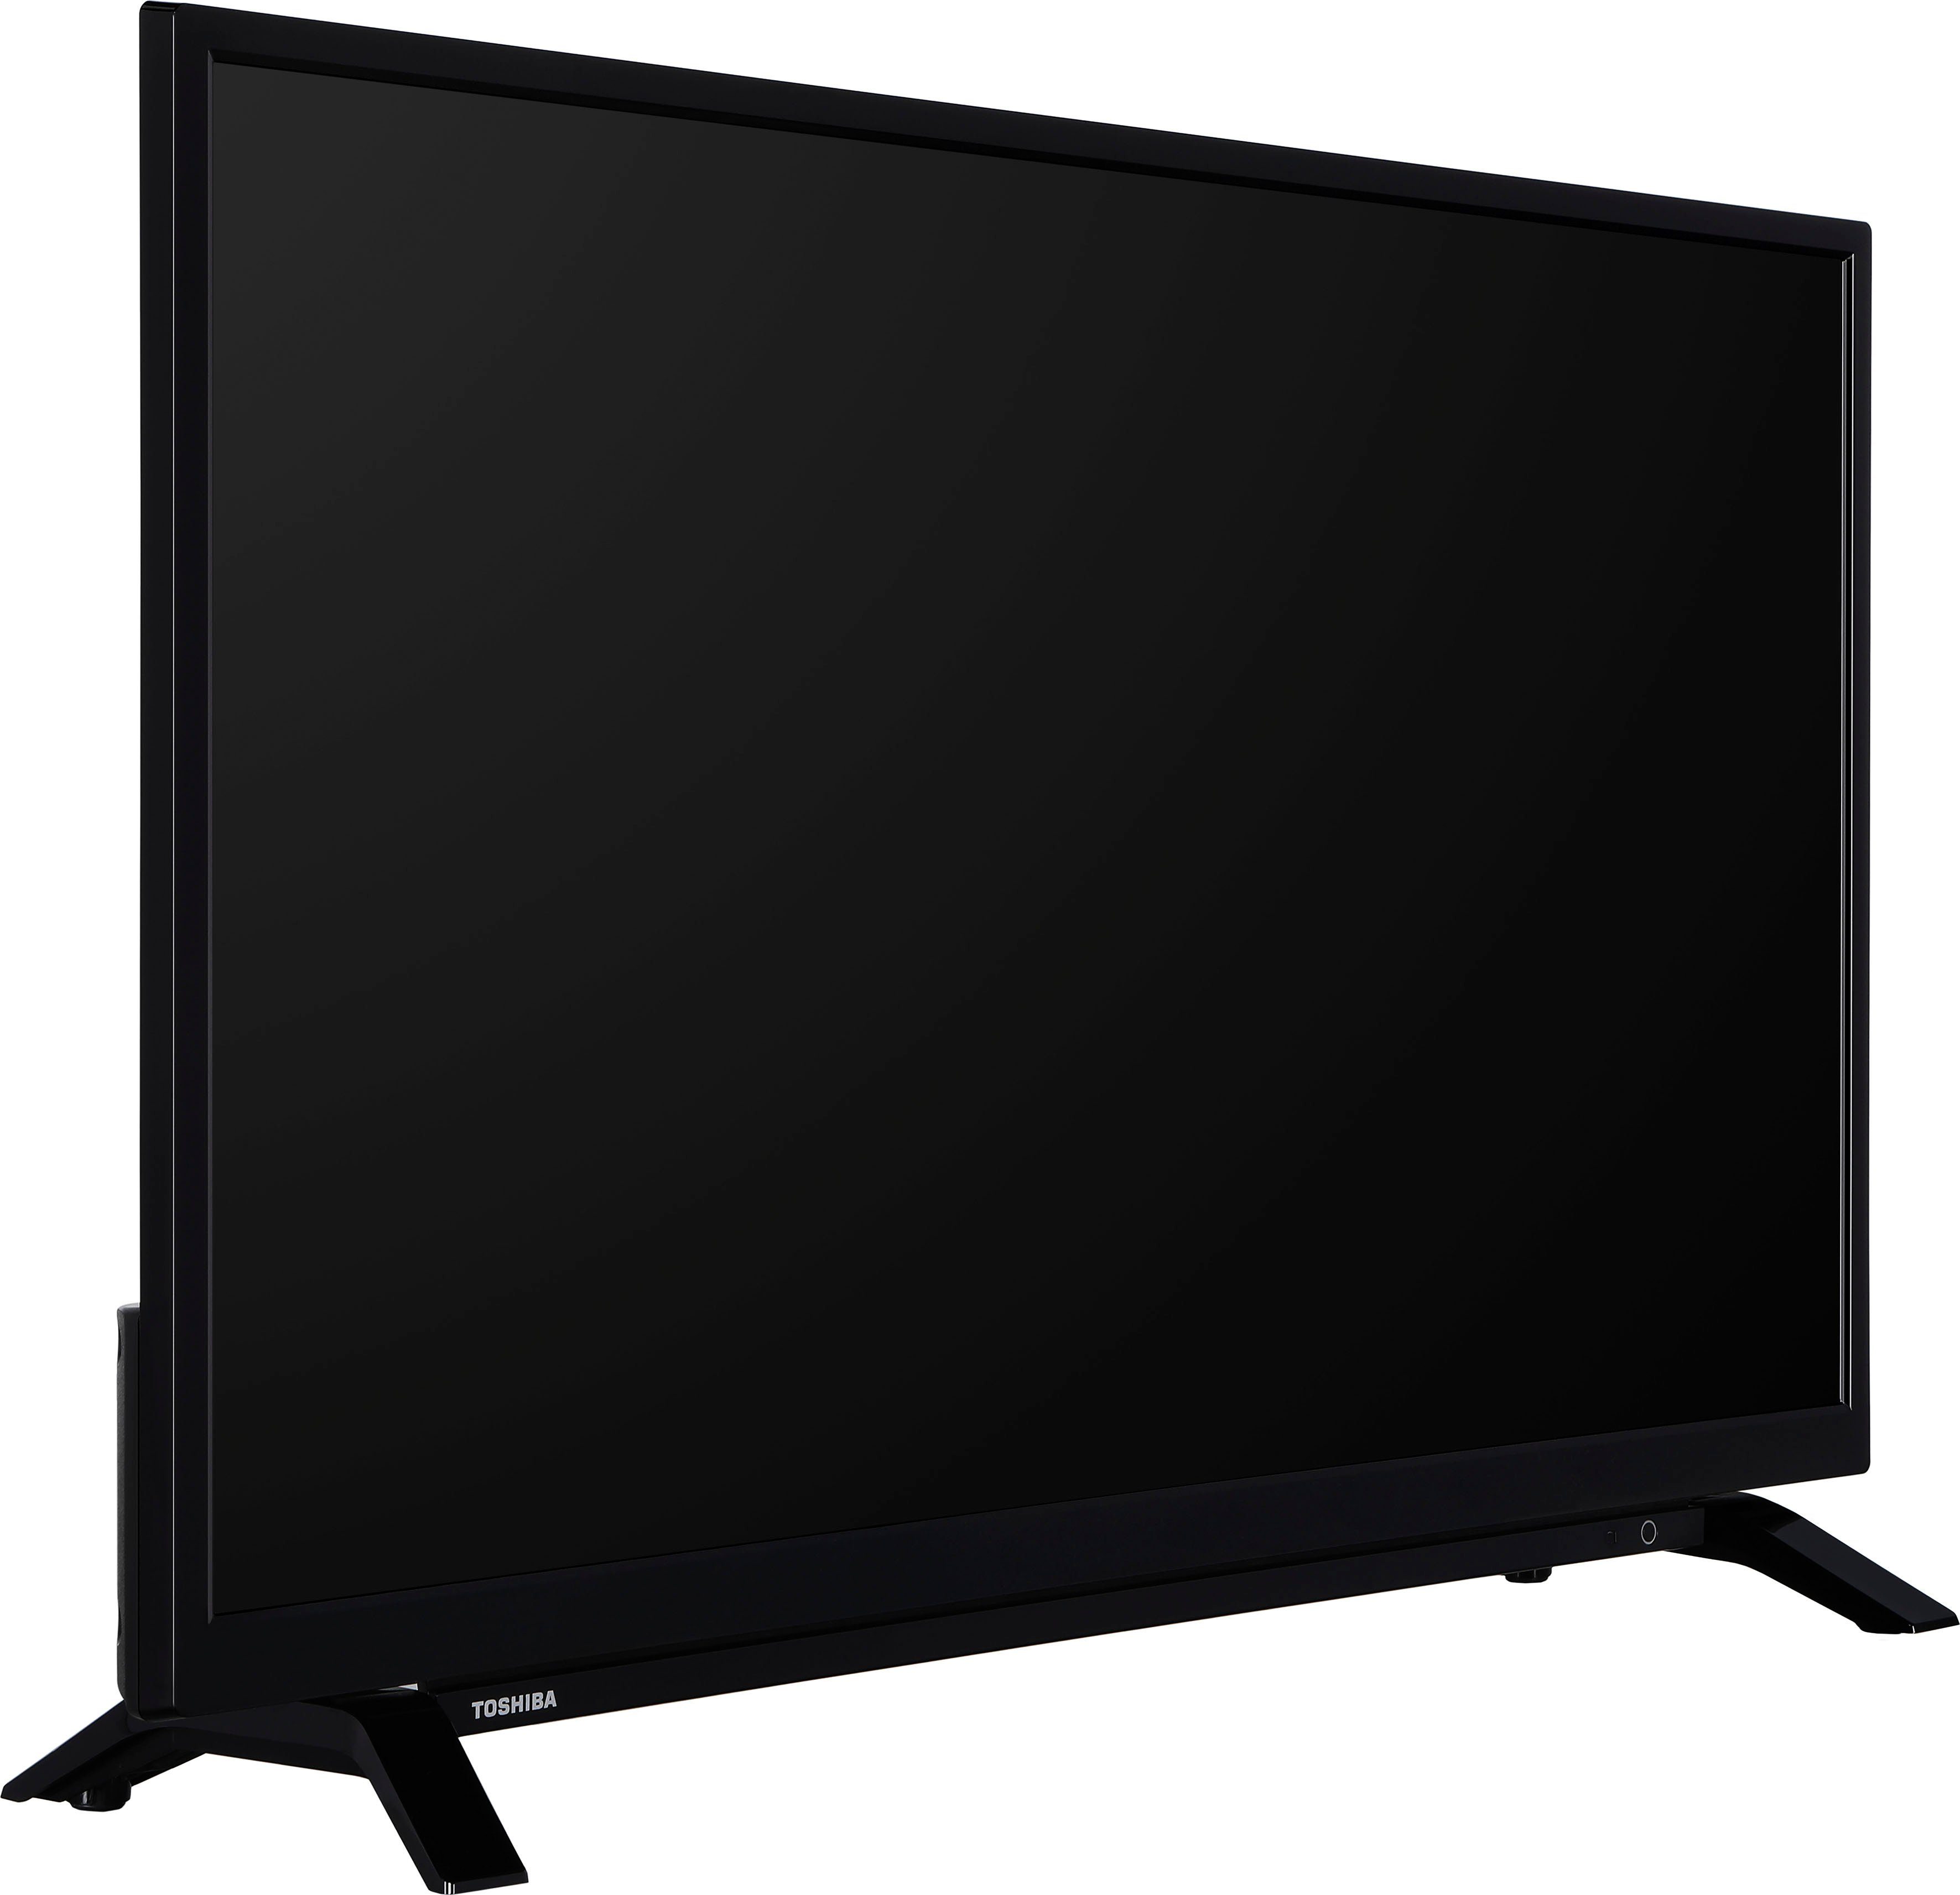 Smart-TV) HD 32W2263DG/2 Toshiba ready, (80 LED-Fernseher cm/32 Zoll,